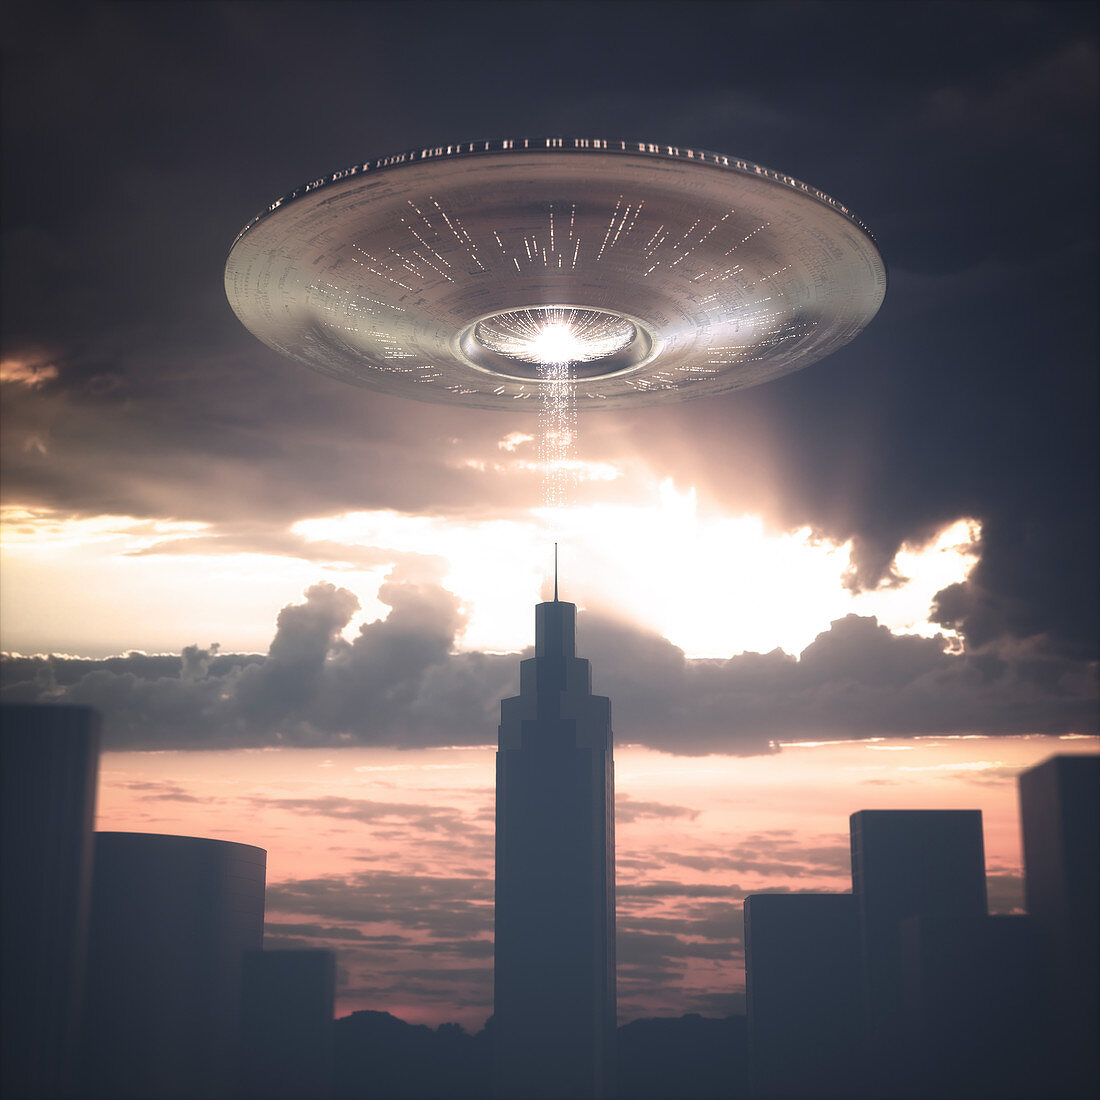 UFO above skyscraper, illustration